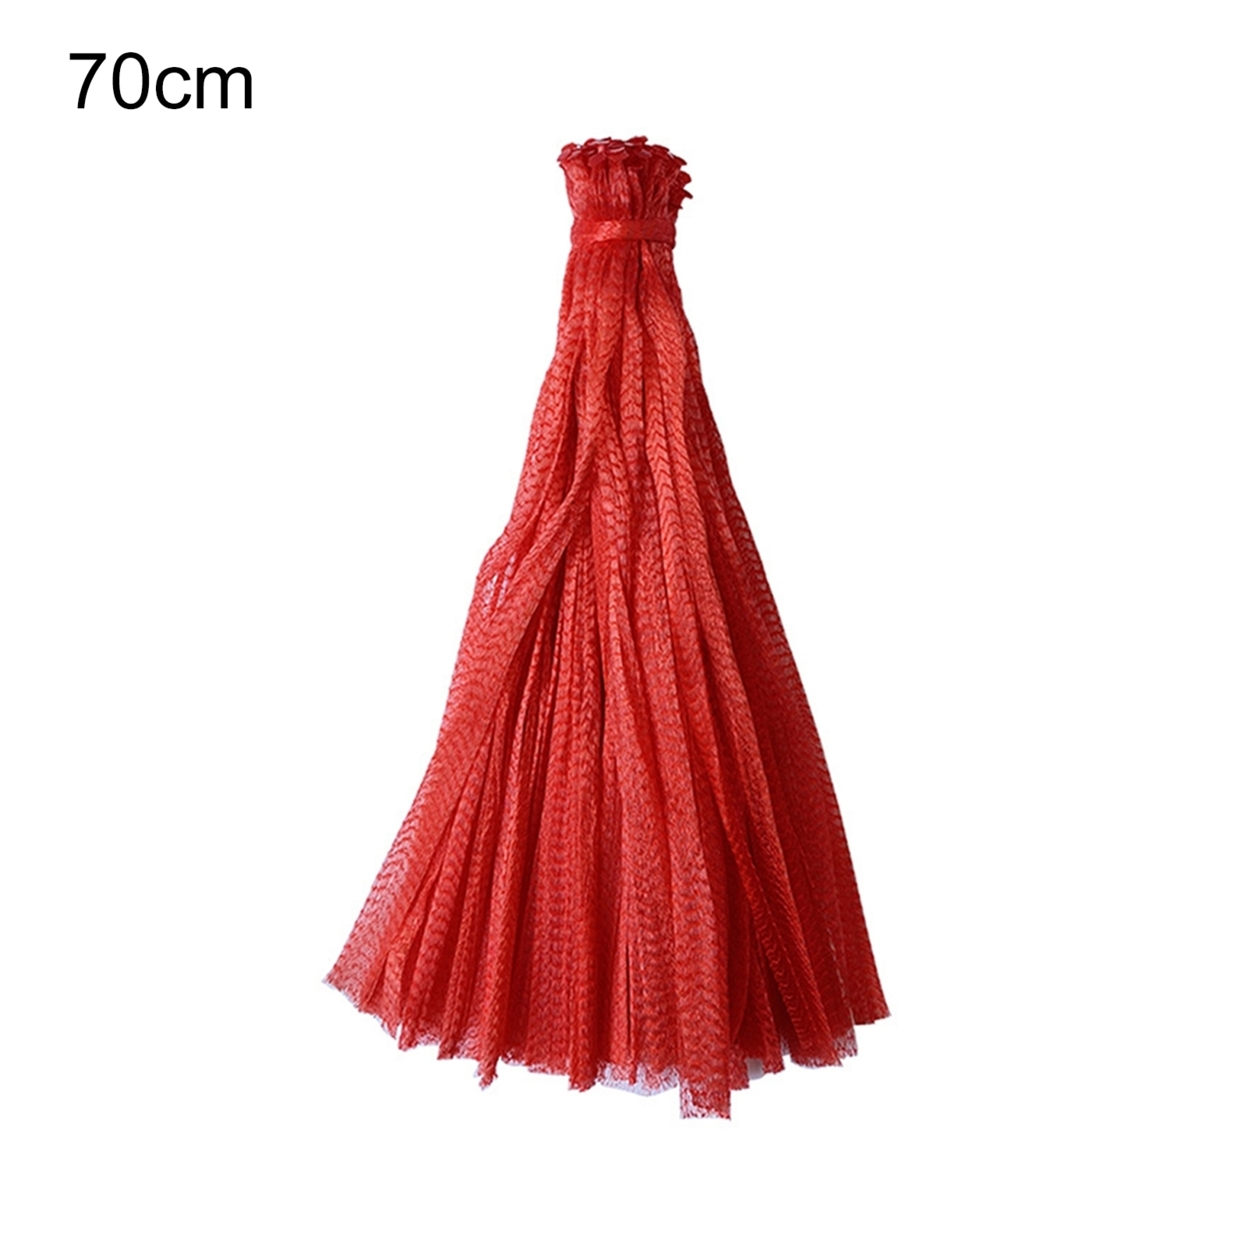 100Pcs Mesh Woven Bags Reusable Breathable Plastic Multifunctional Fruit Growth String Net Sacks for Garden - 70cm